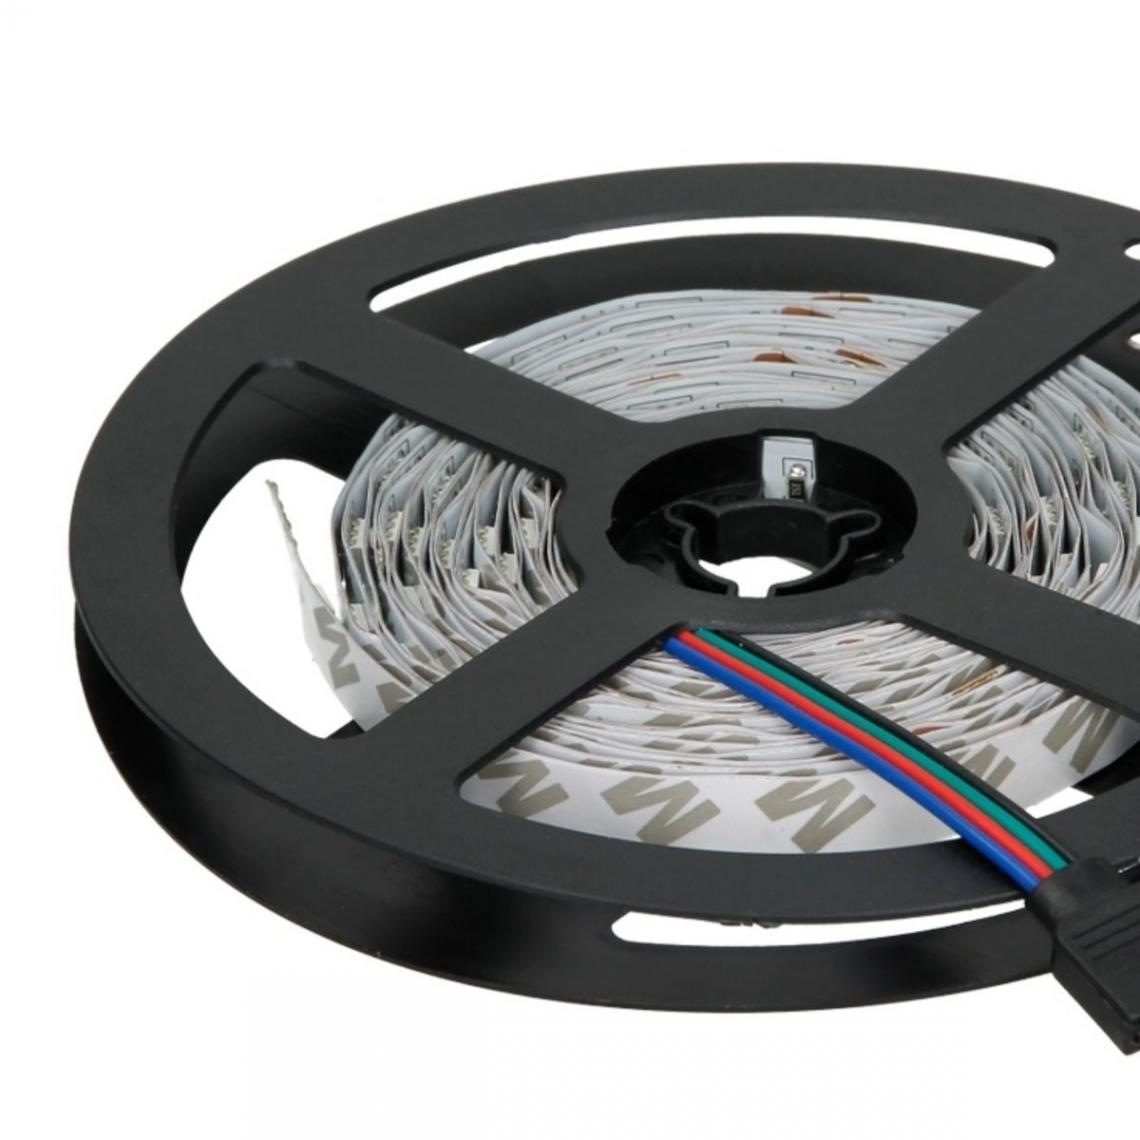 Ecd Germany - Bande de LED SMD 5050 RGB 2m 60LED/m changement de couleur - Ruban LED